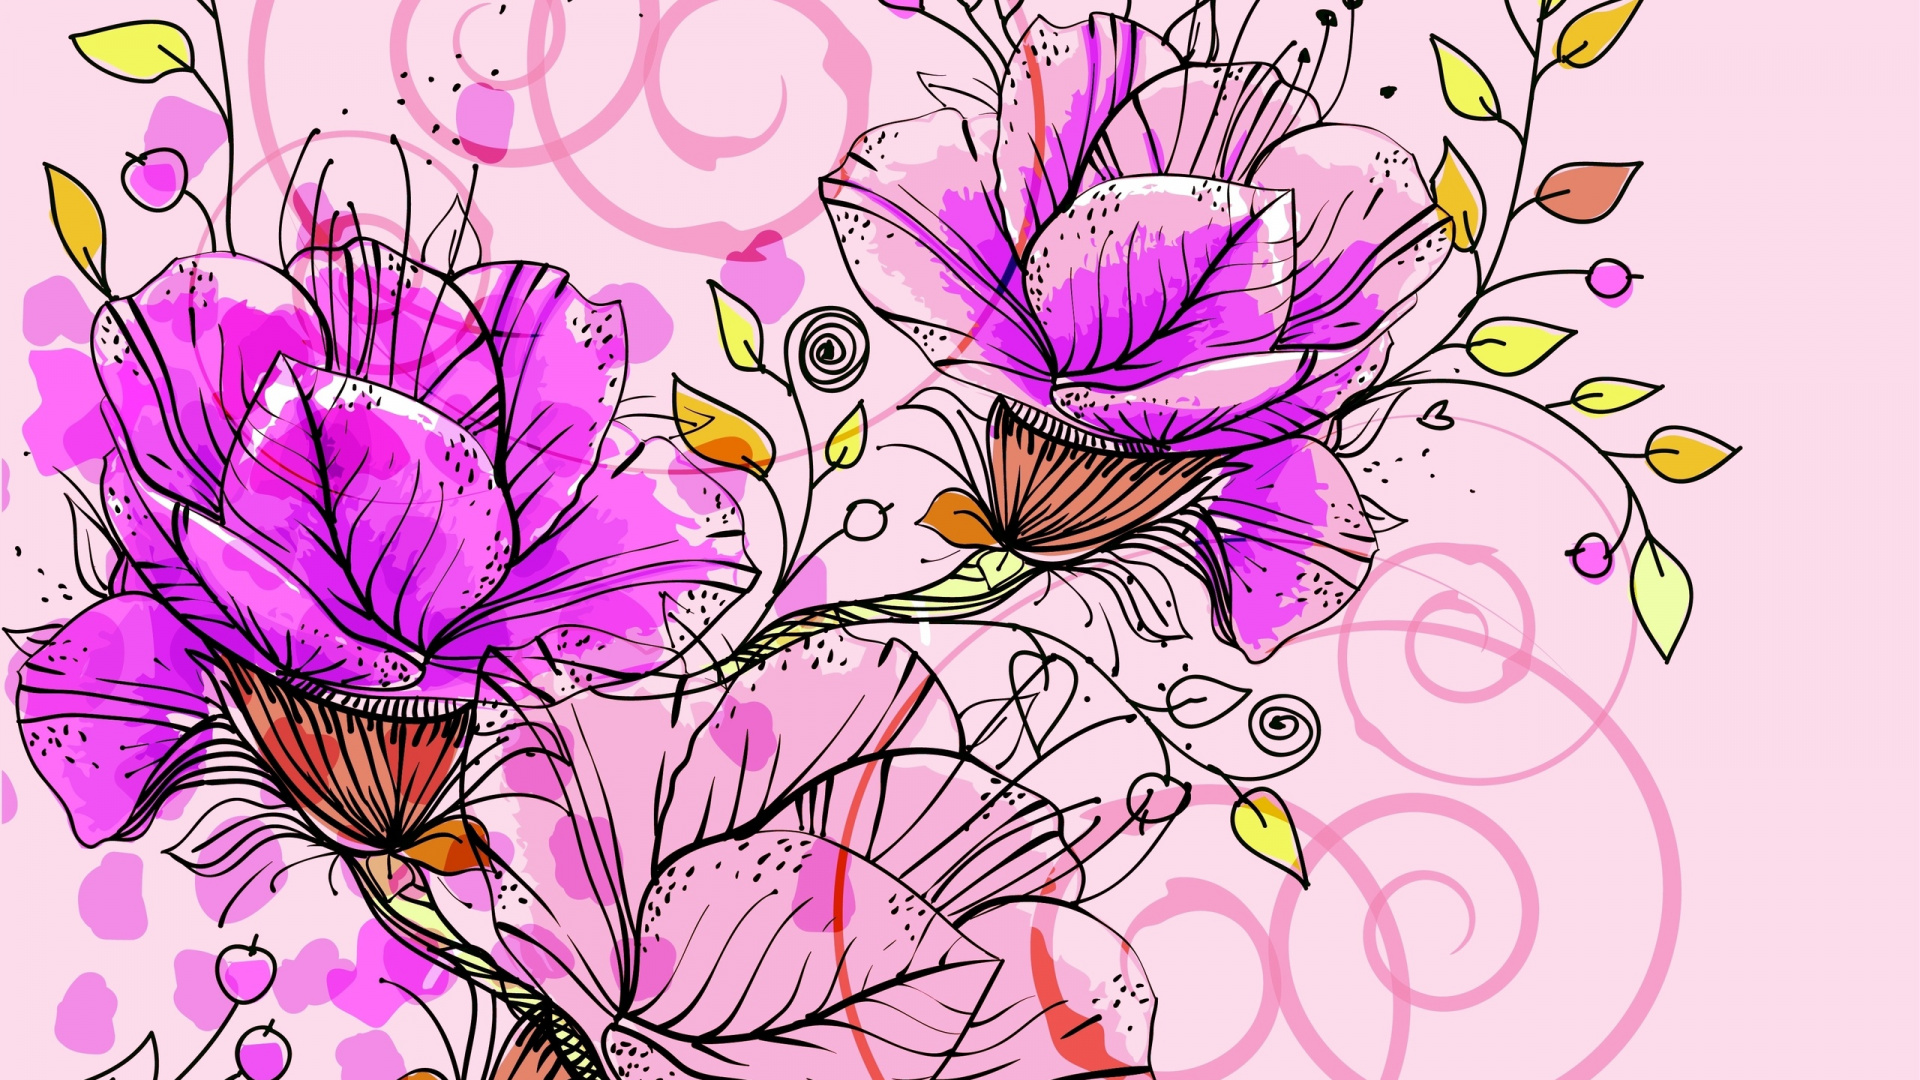 花卉设计, 矢量图形, 抽象艺术, 显花植物, 装饰艺术 壁纸 1920x1080 允许